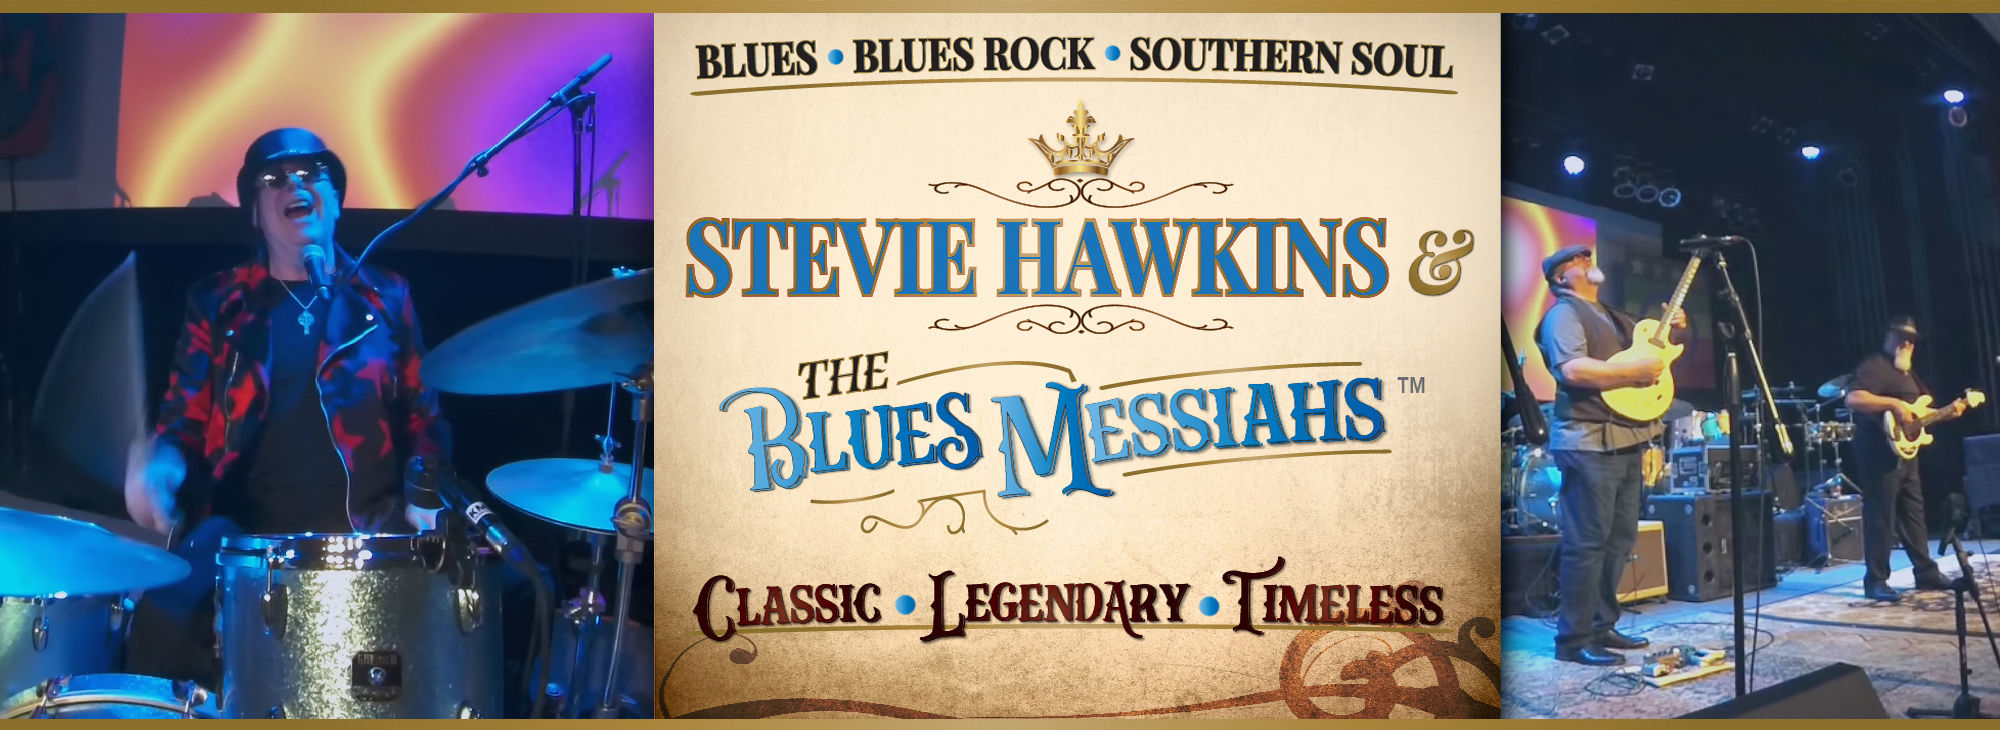 Stevie Hawkins & The Blues Messiahs header